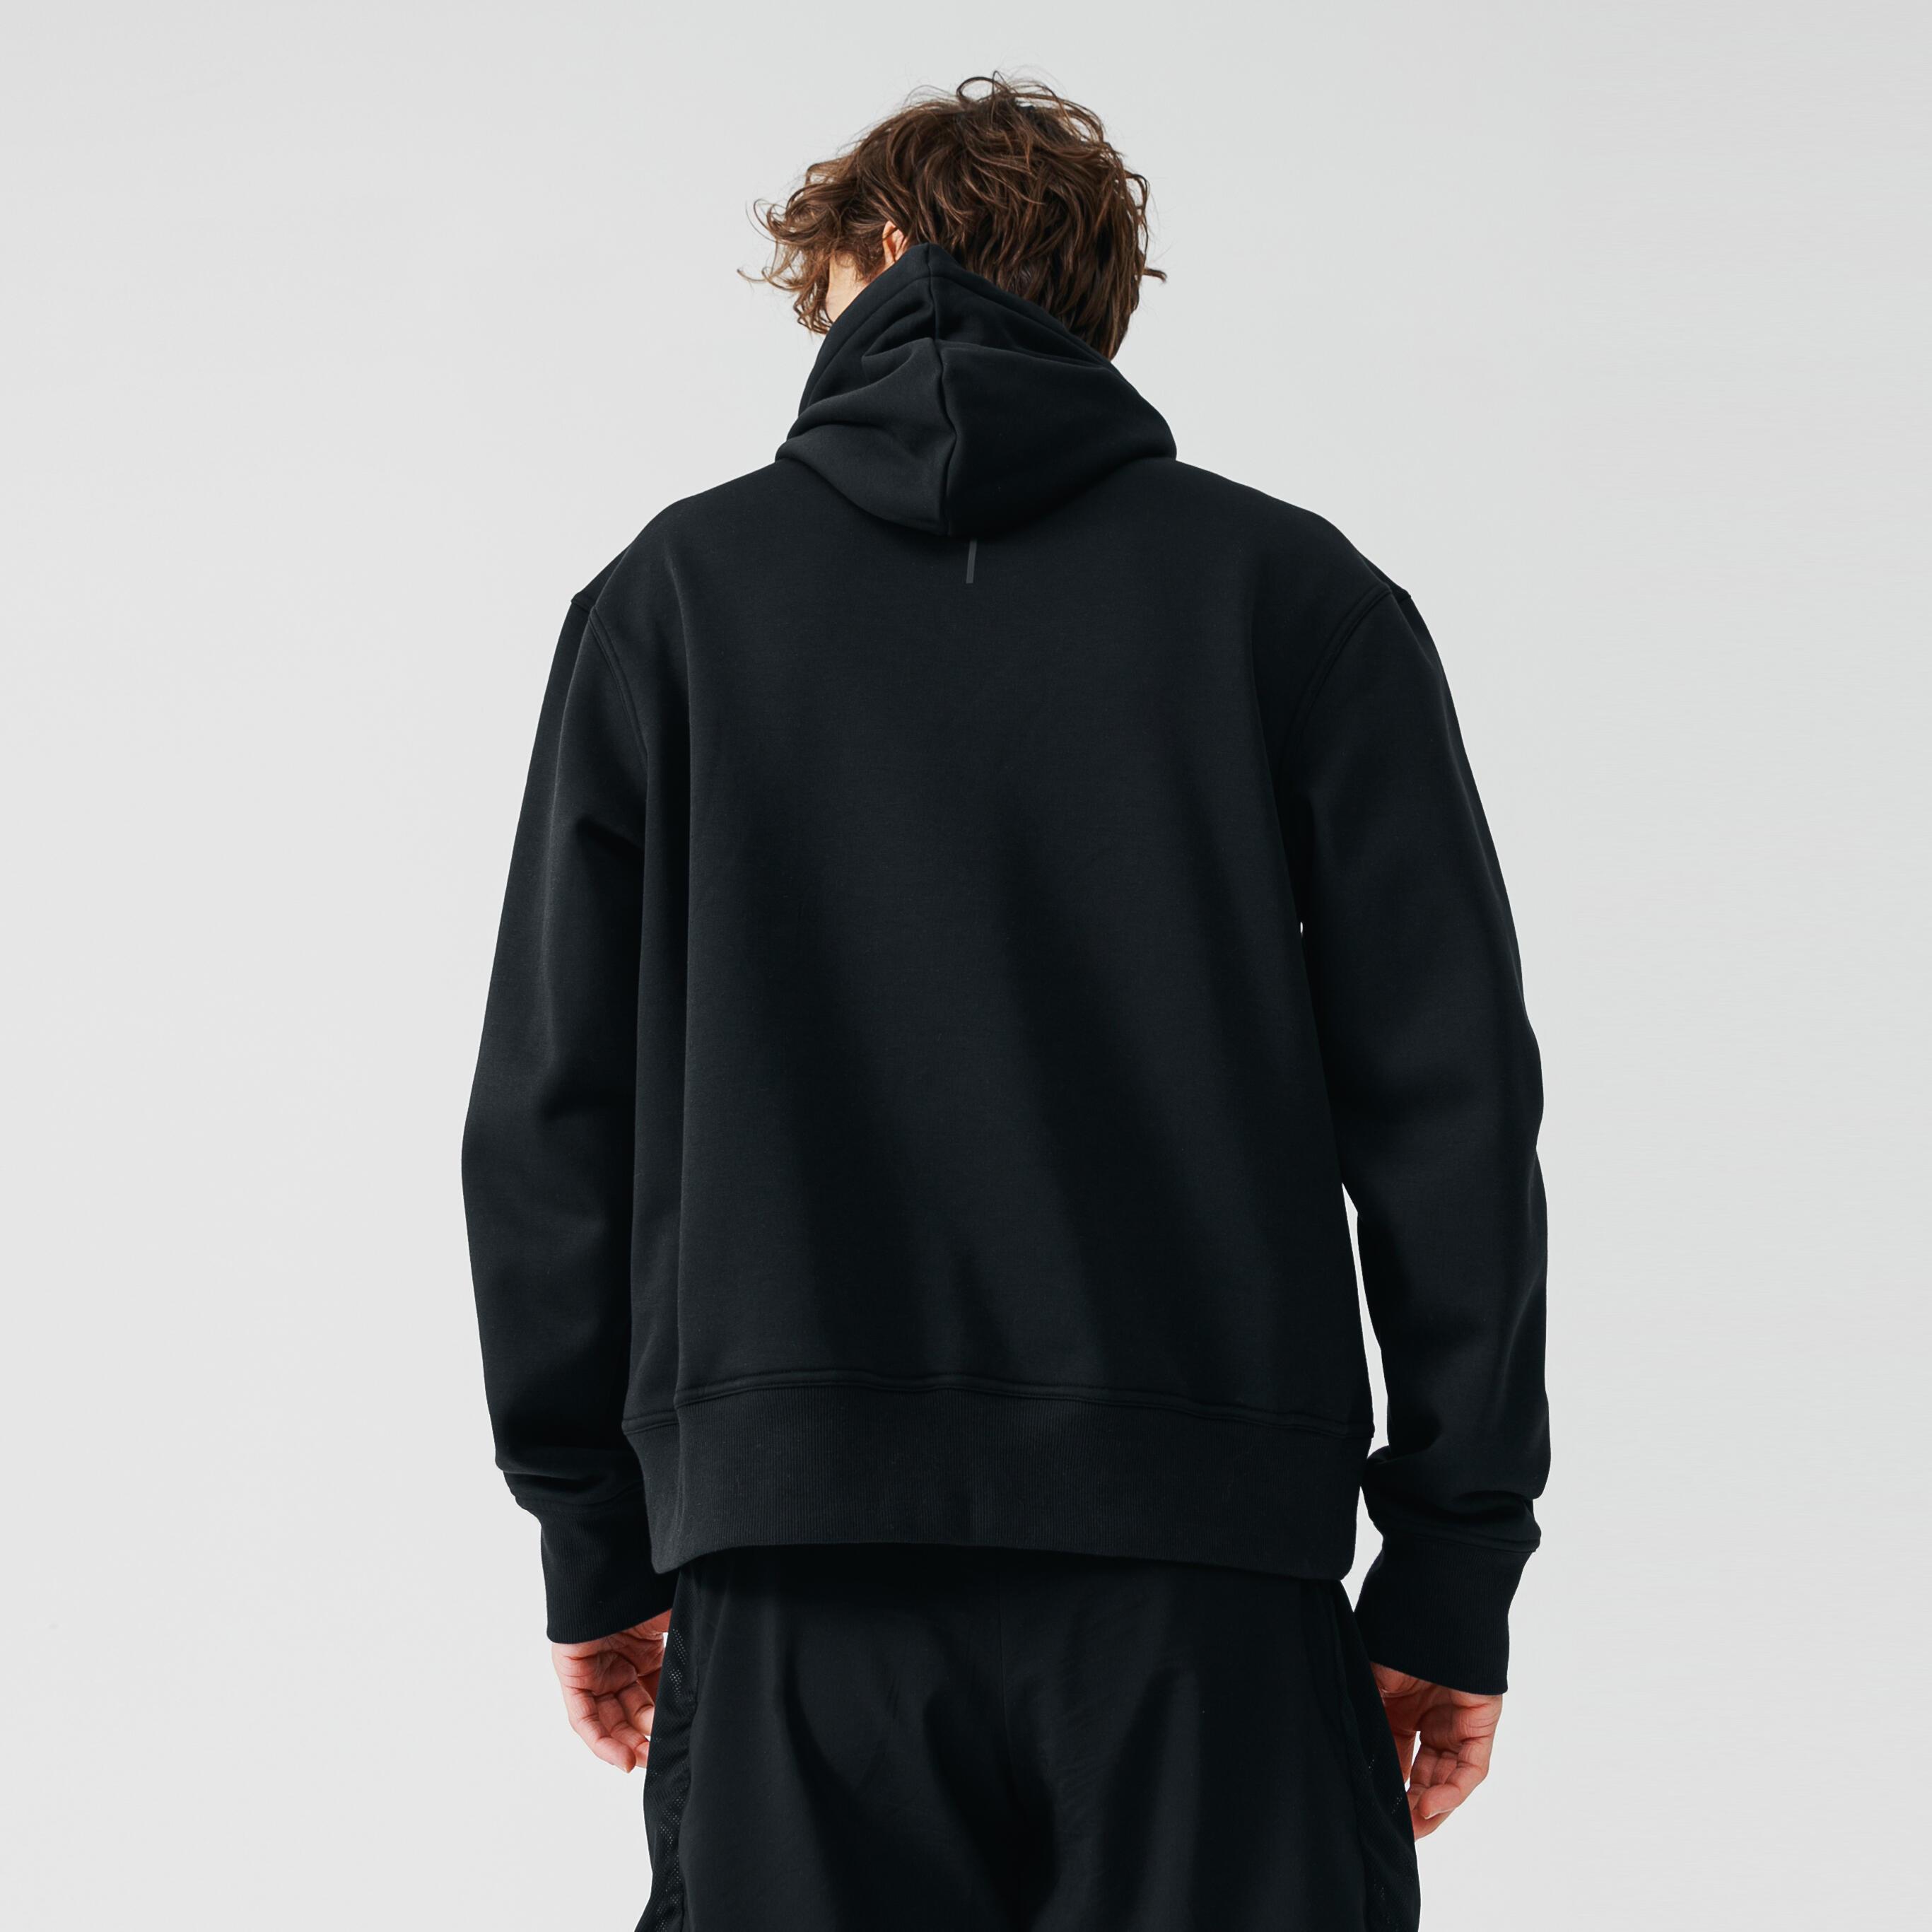 Men's warm running hoodie - Warm 500 - Black 11/12